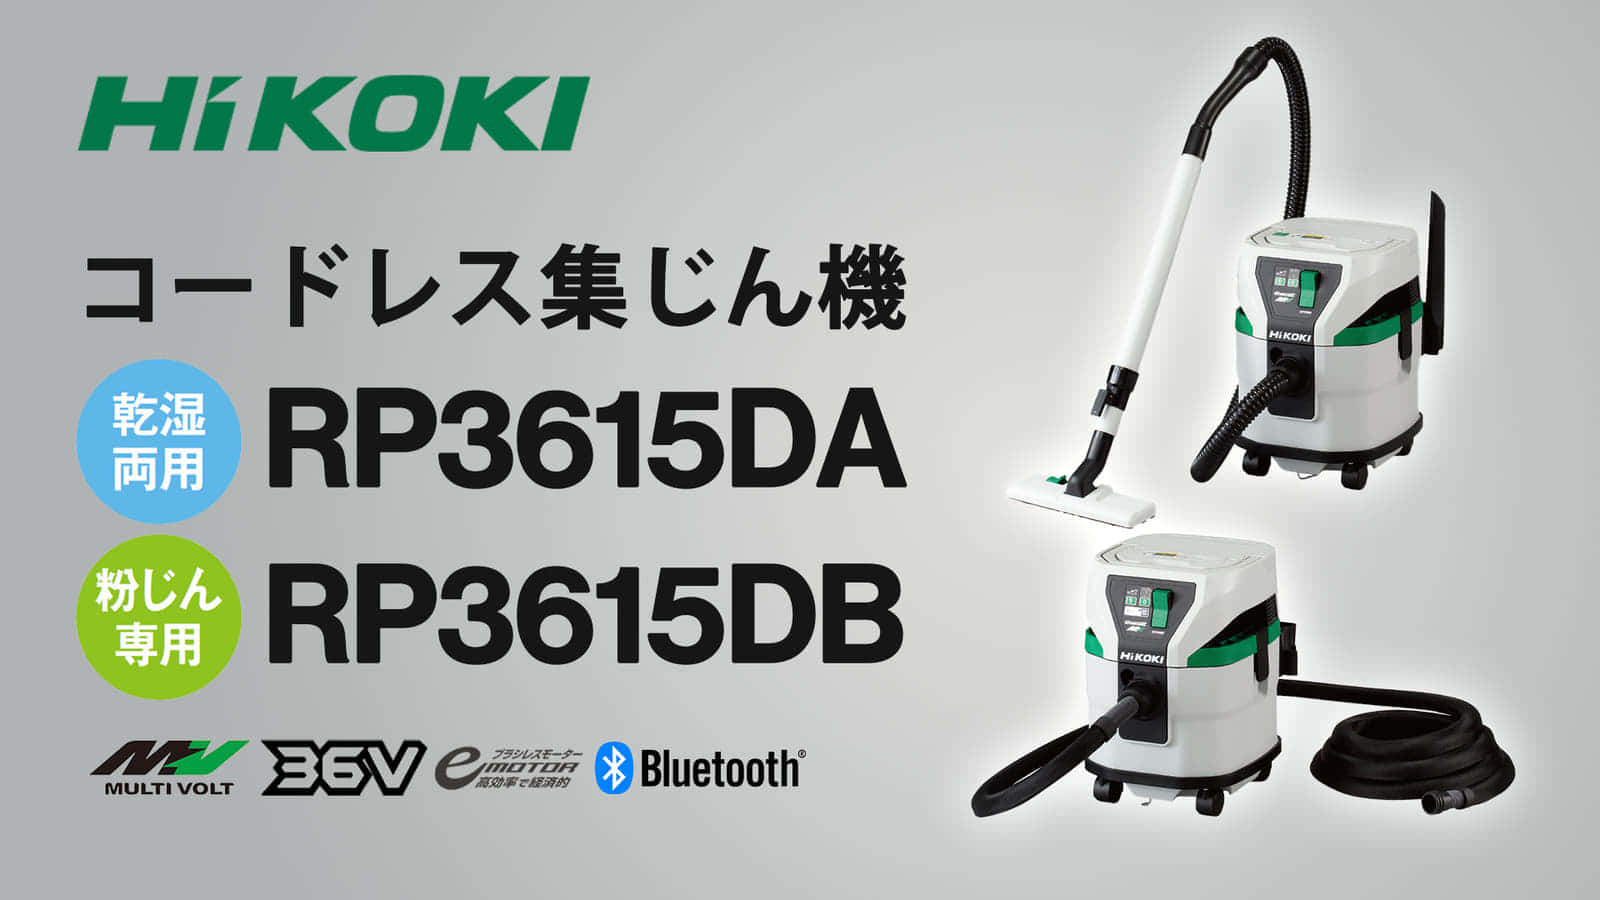 HiKOKI RP3615DA/RP3615DB コードレス集じん機を発売、タンク容量15Lの